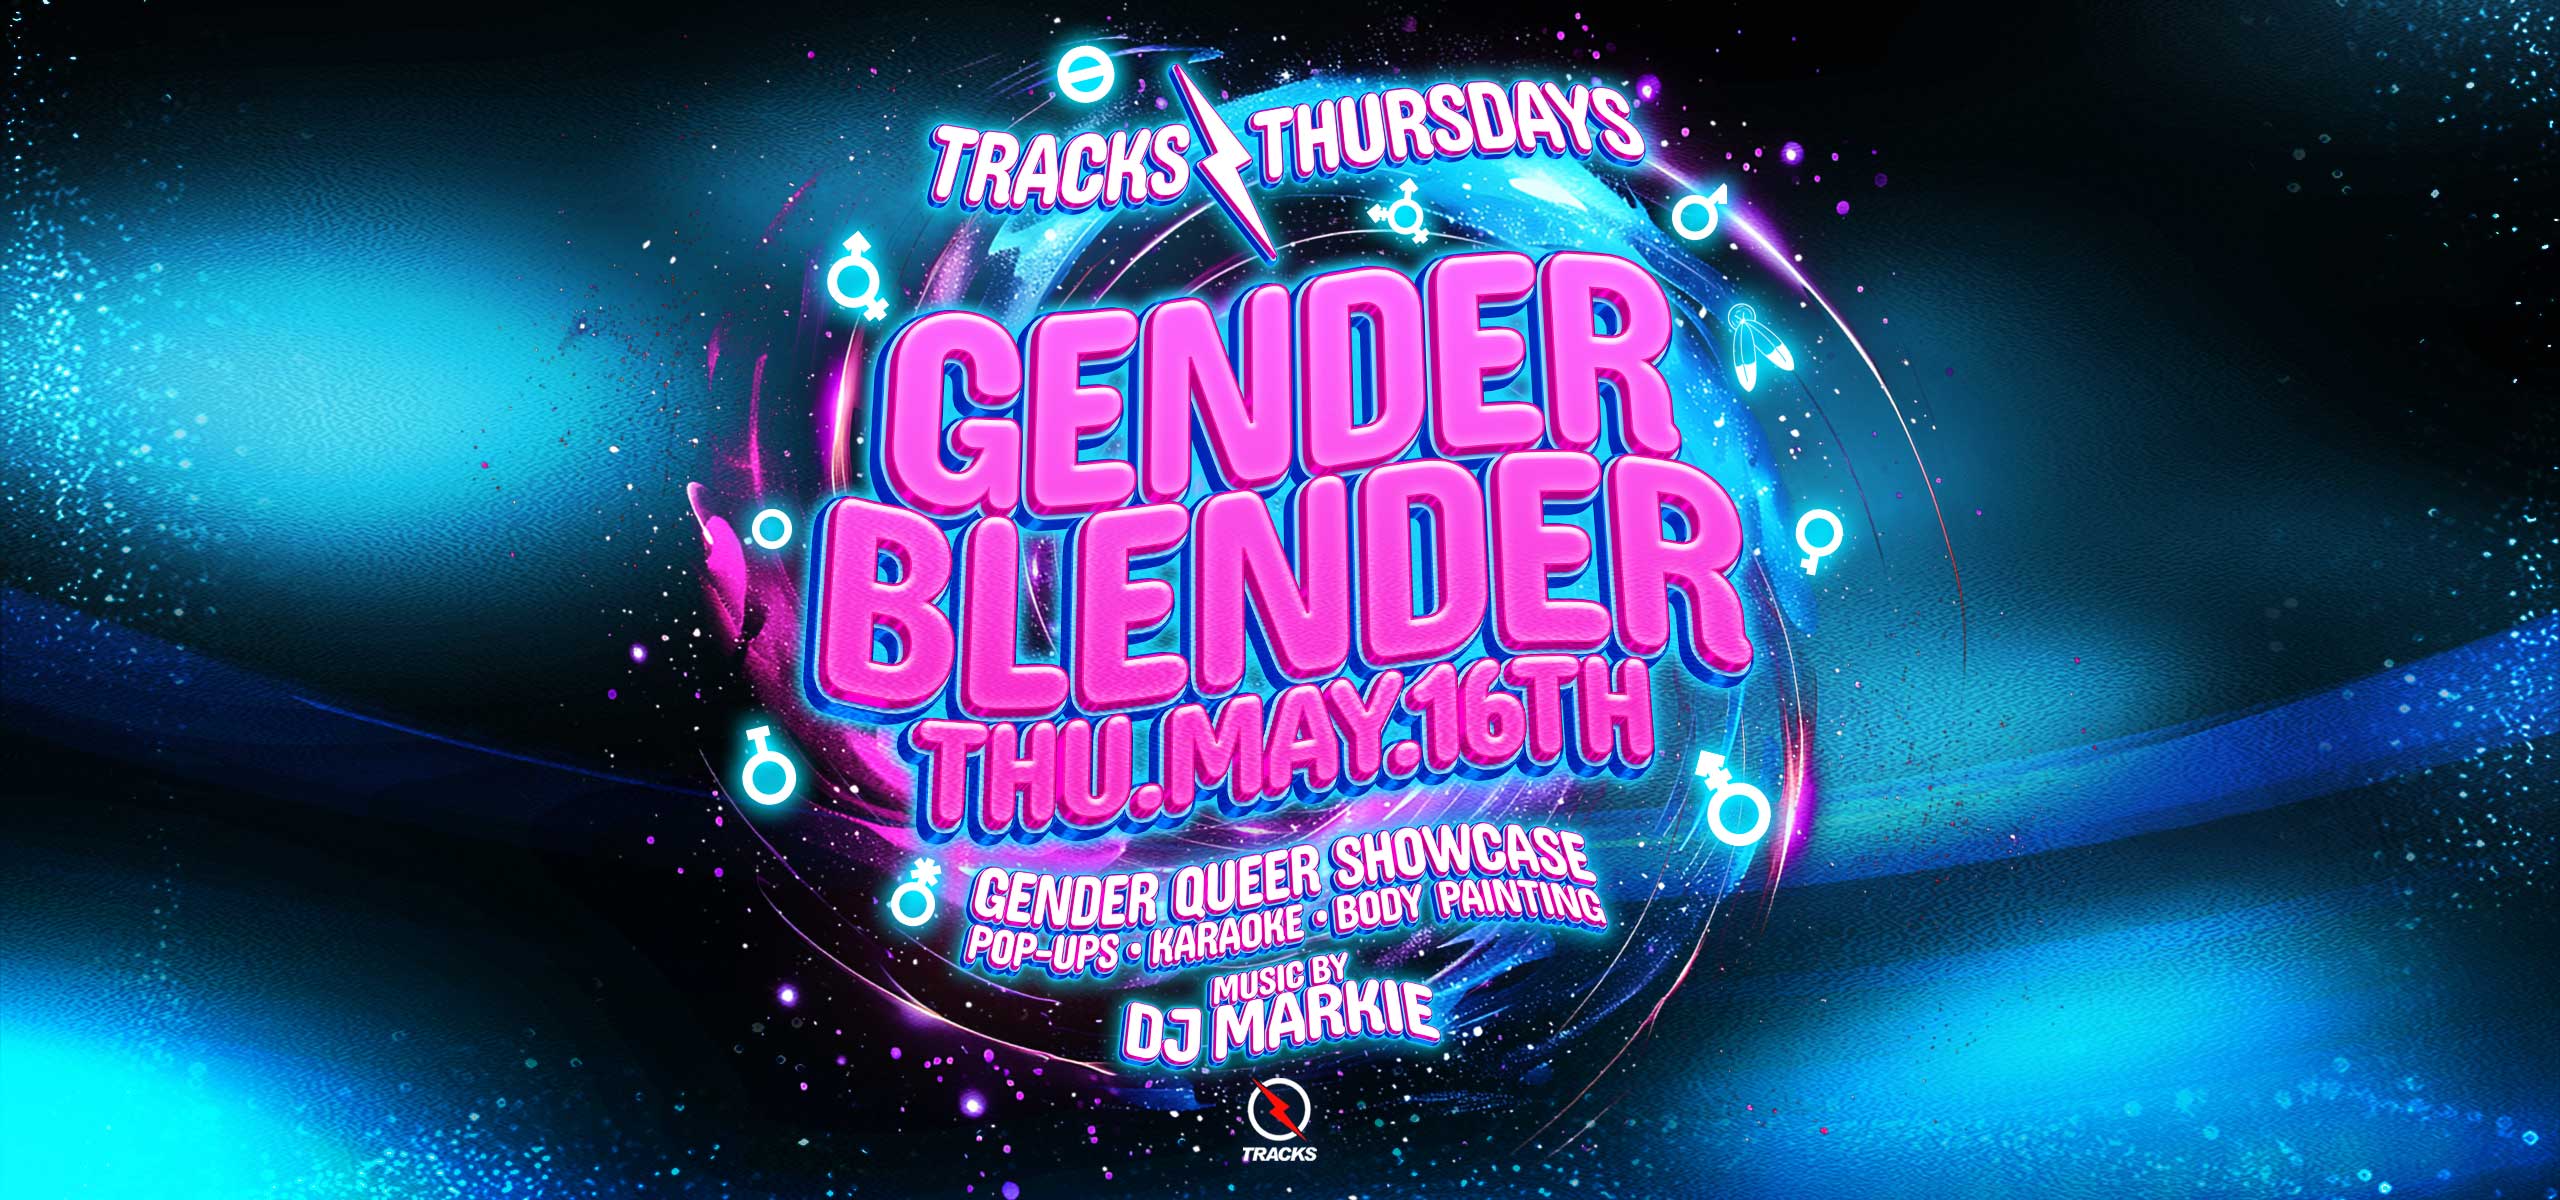 18+ Gender Blender – Gender Queer Showcase Ft. DJ Markie